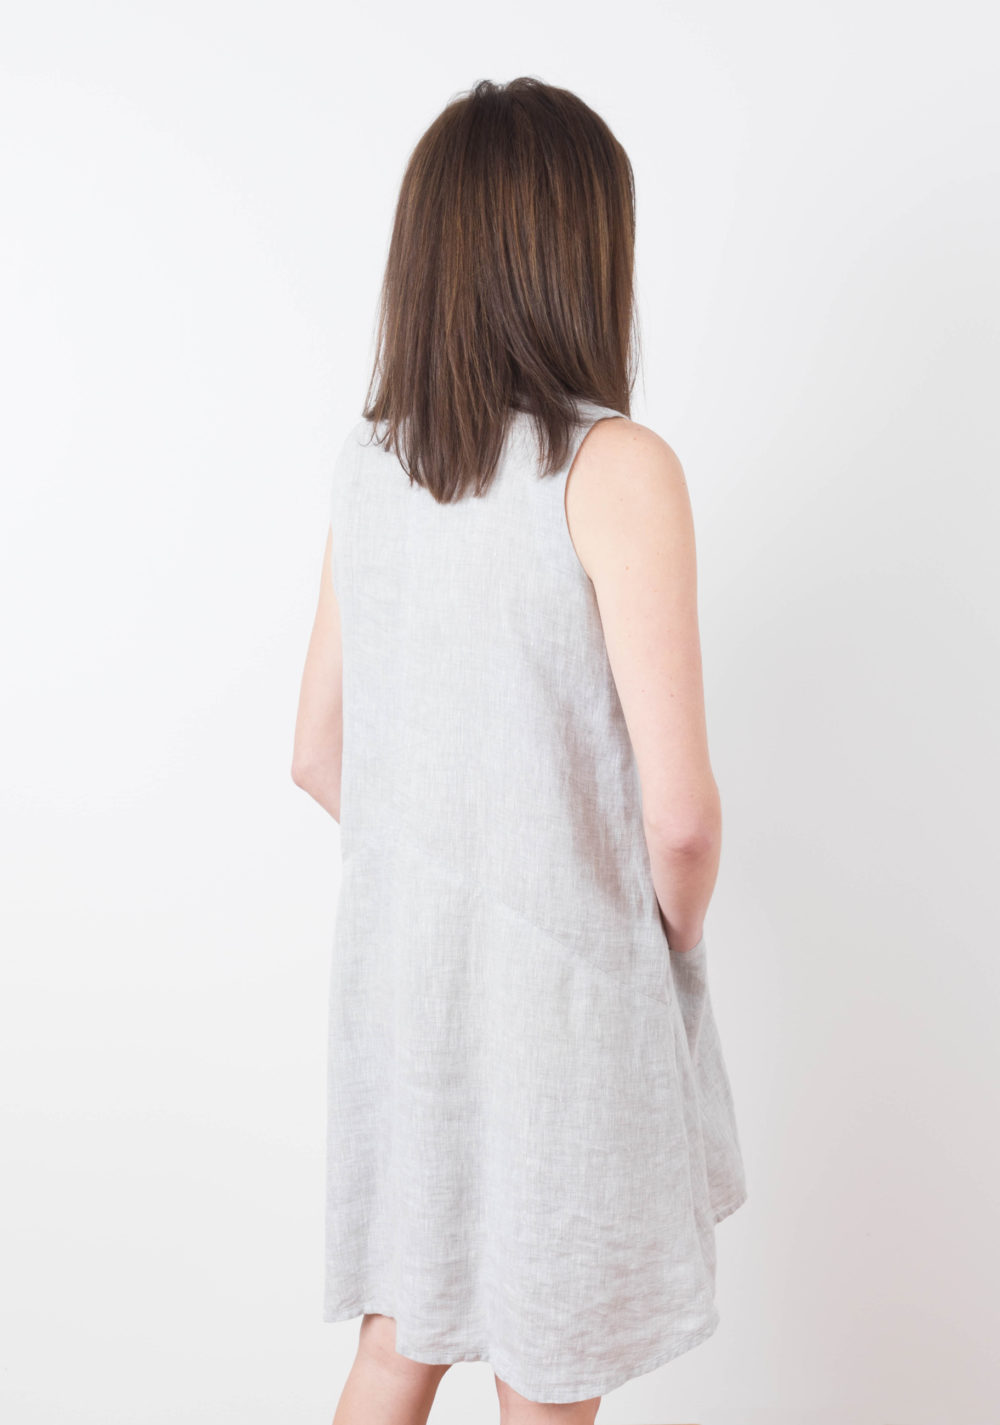 Farrow Dress Pattern Size 0-18 By Grainline Studio